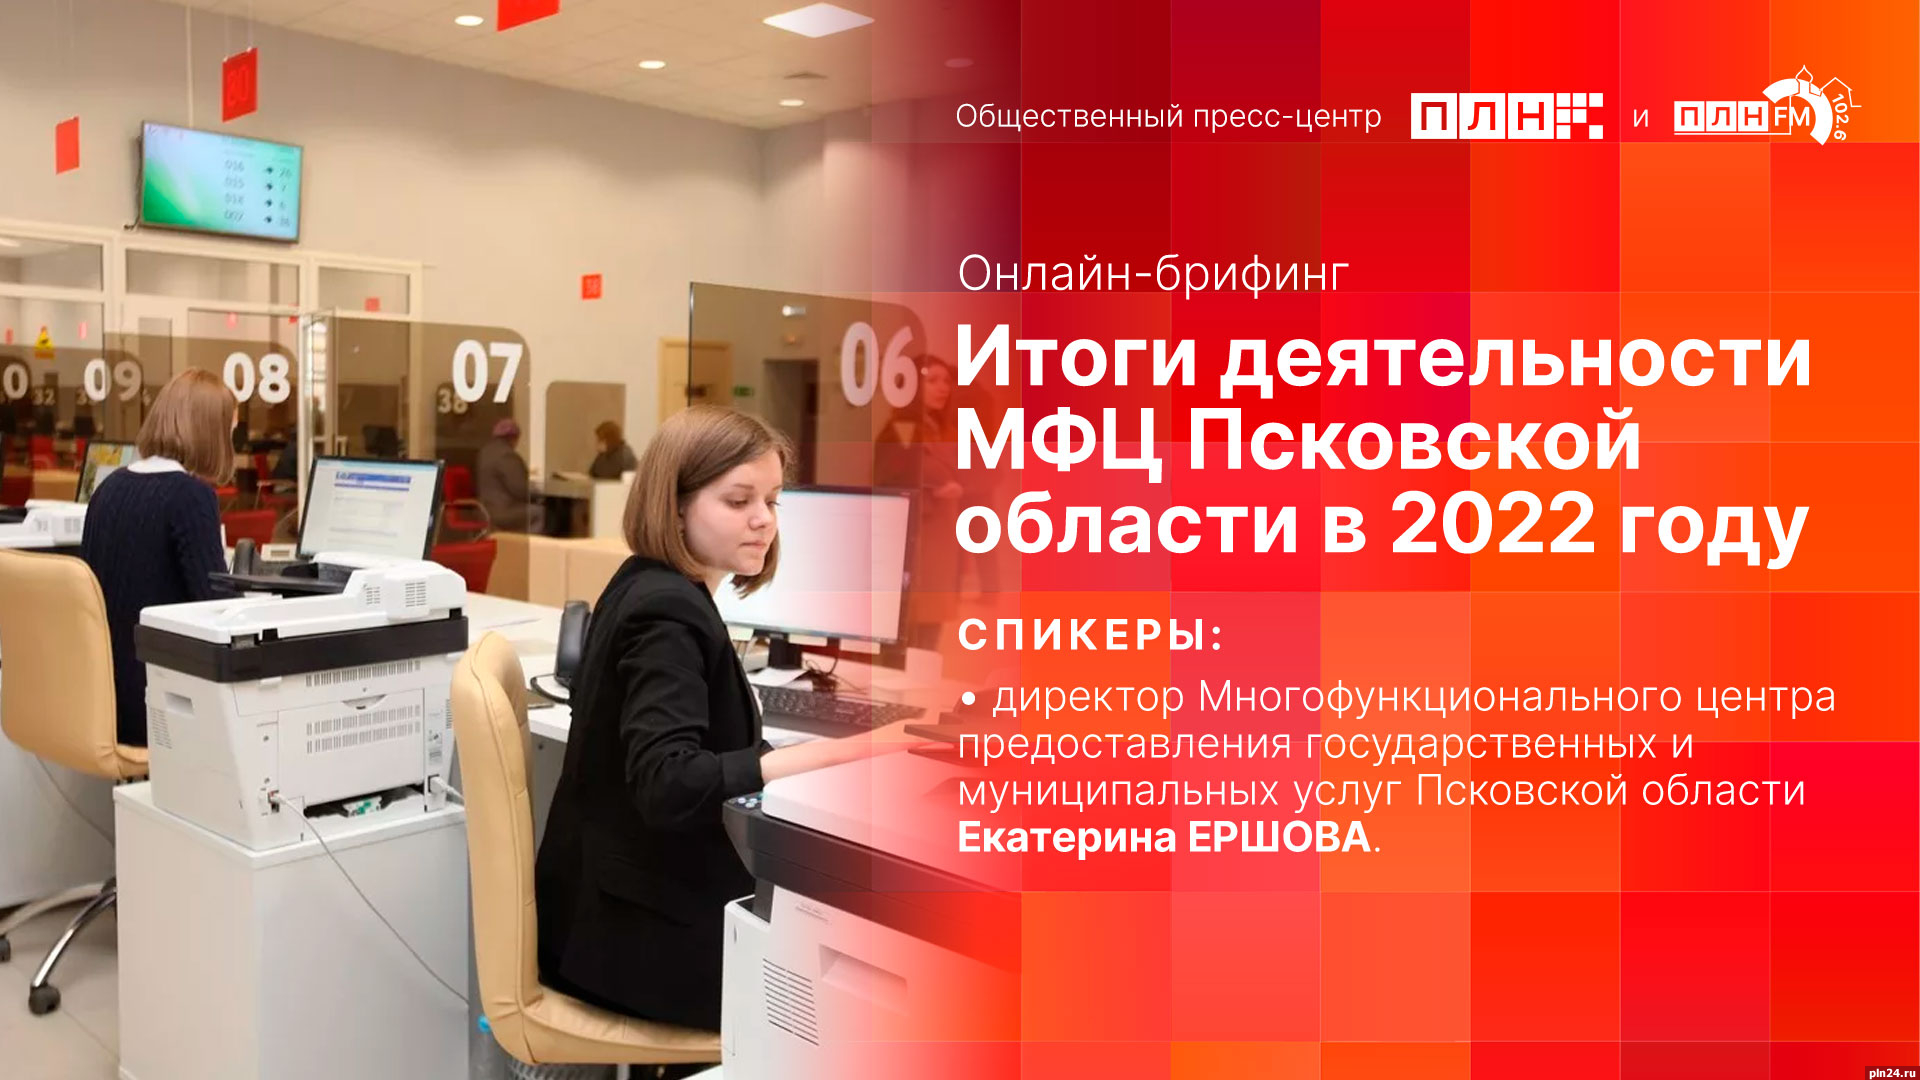 Начинается видеотрансляция брифинга об итогах деятельности МФЦ Псковской области